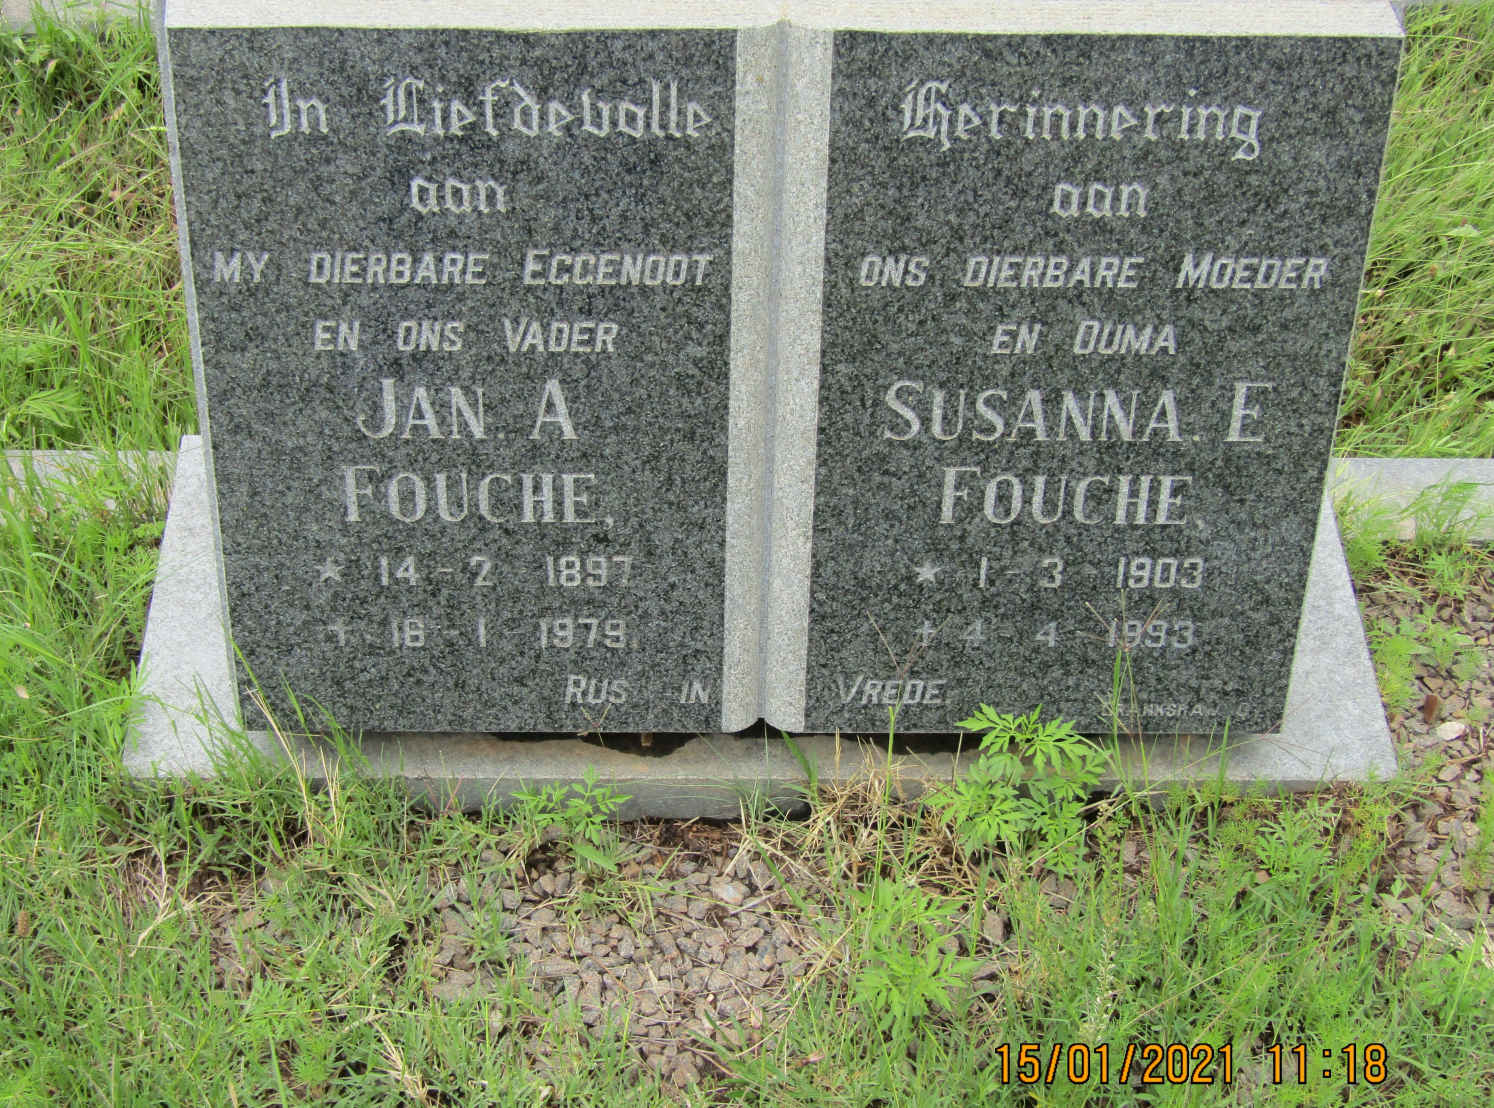 FOUCHE Jan A. 1897-1979 & Susanna E. 1903-1993